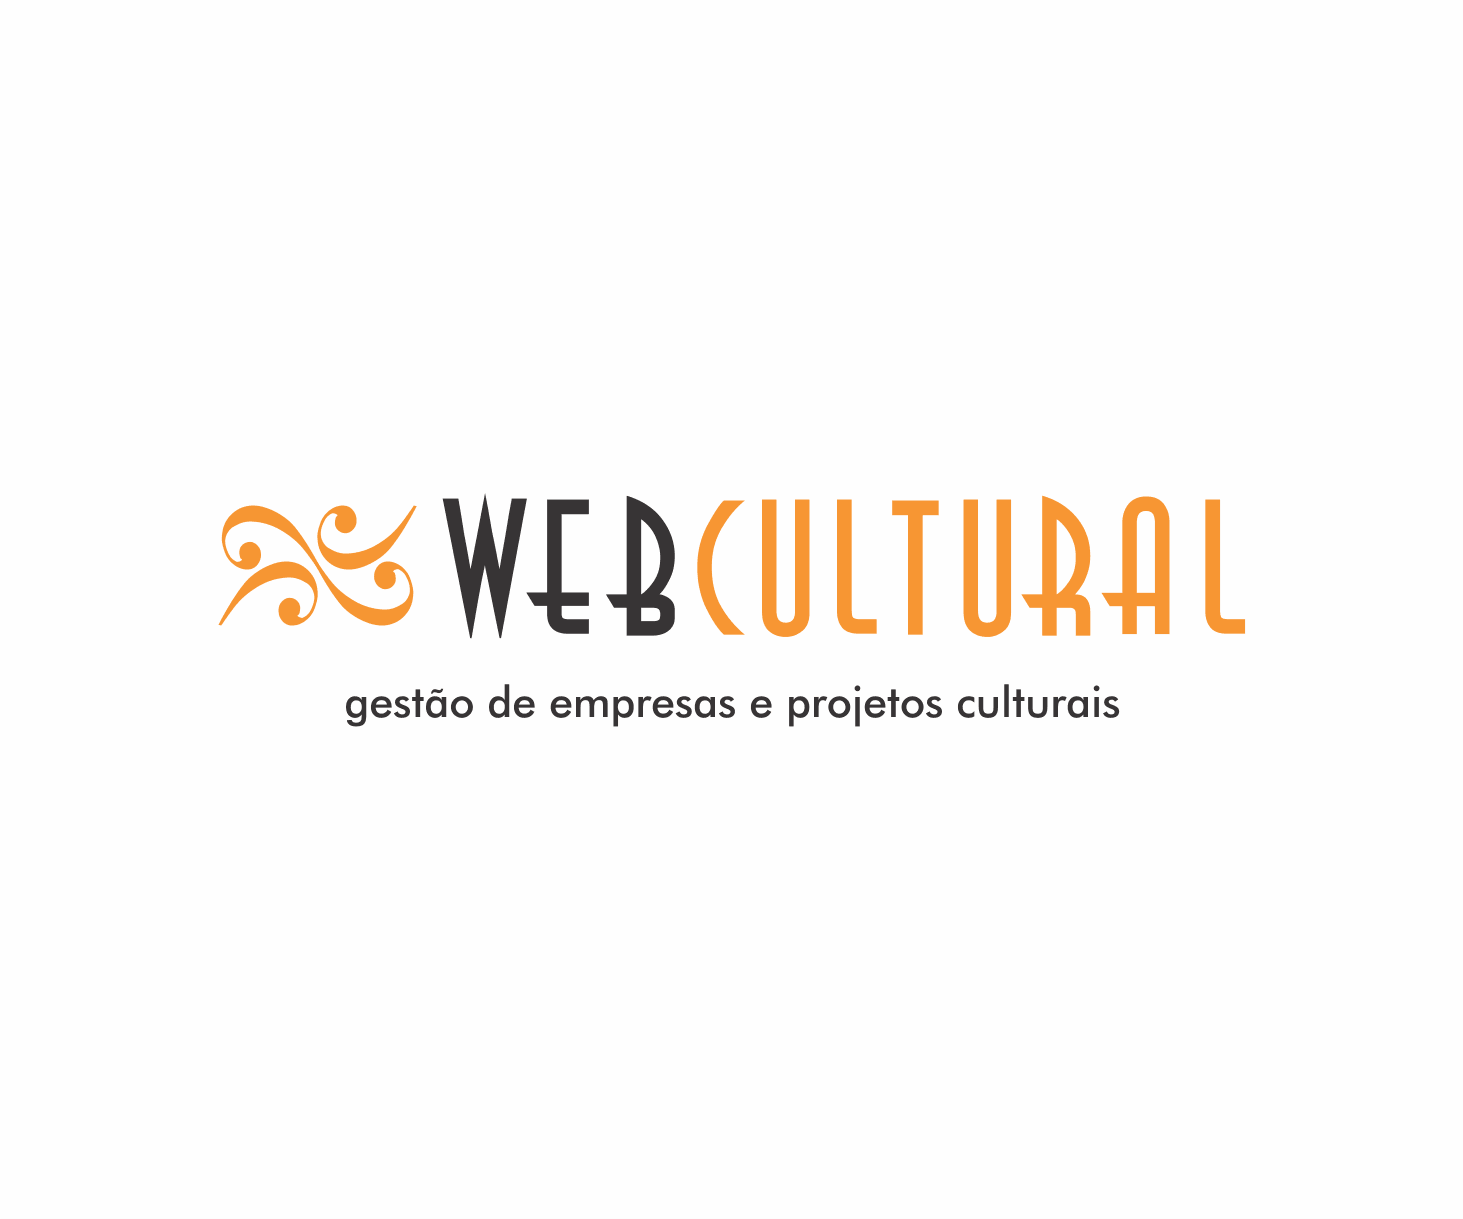 WebCultural